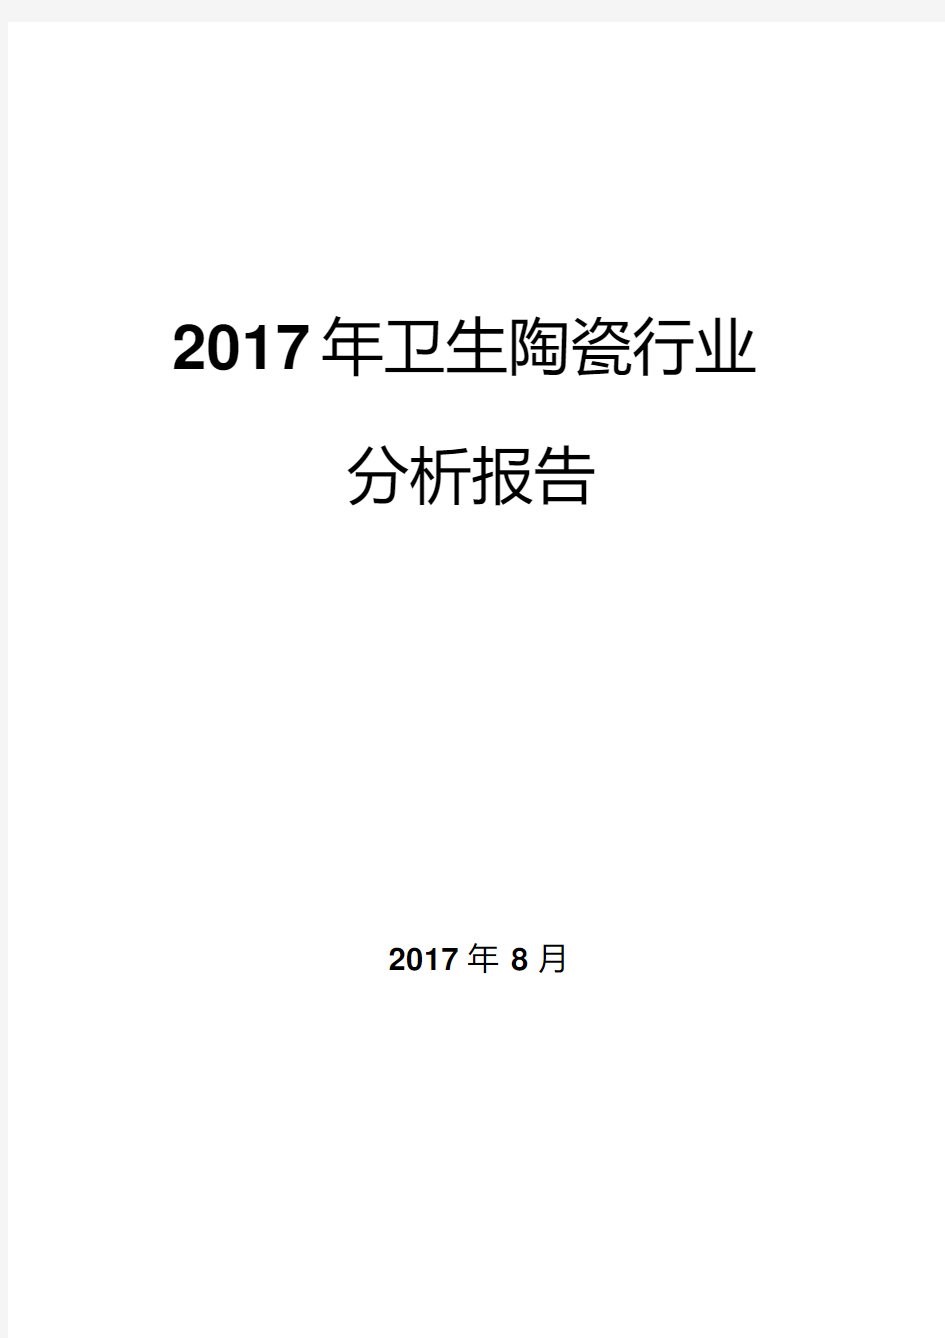 2017年卫生陶瓷行业分析报告